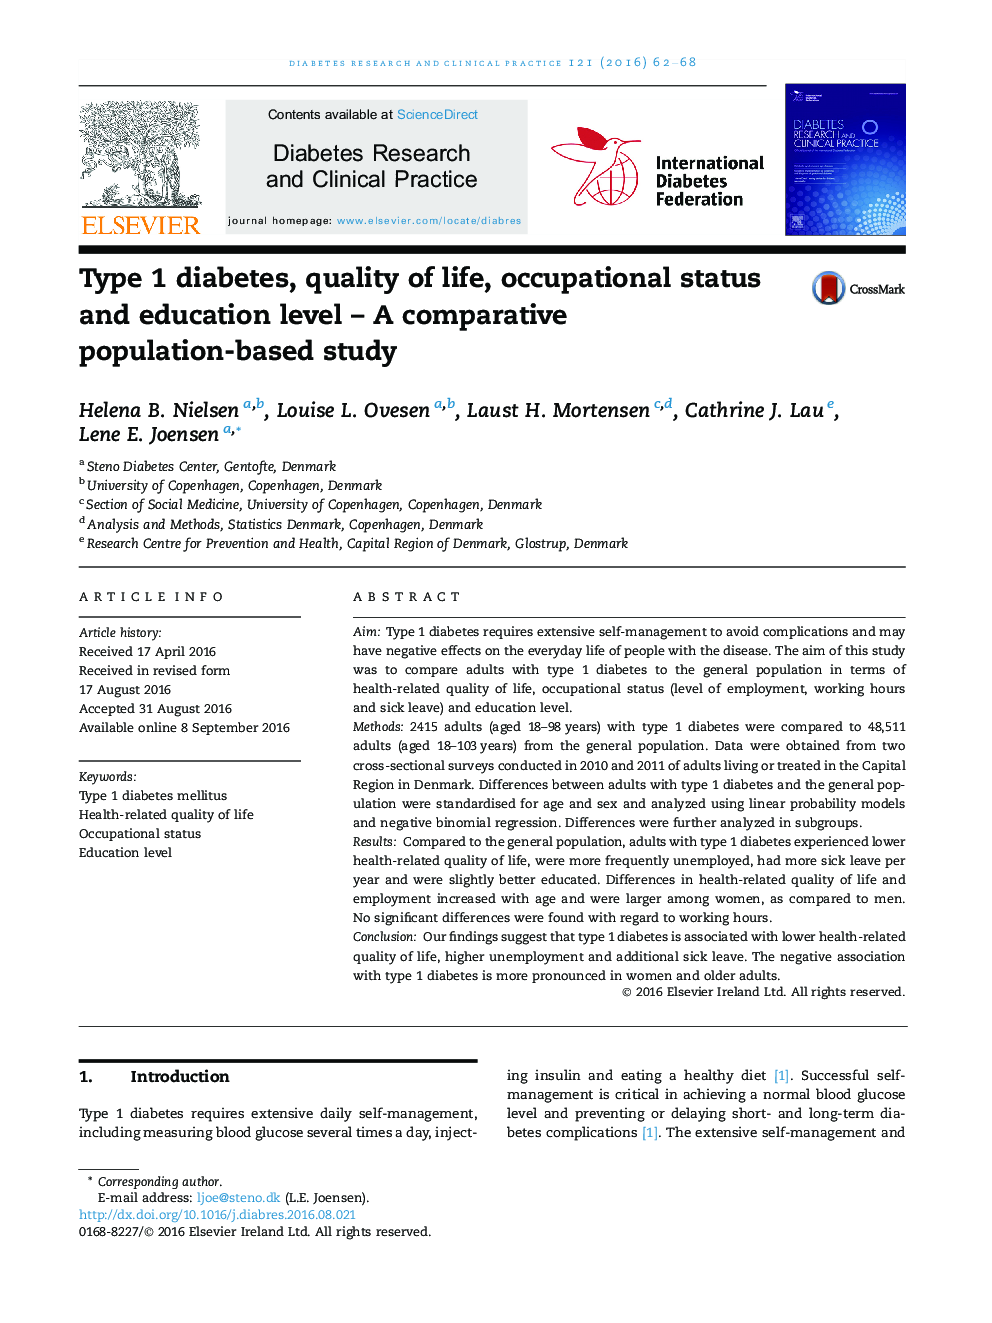 دیابت نوع 1، کیفیت زندگی، وضعیت شغلی و سطح تحصیلات - یک مطالعه مقایسه ای مبتنی بر جمعیت 